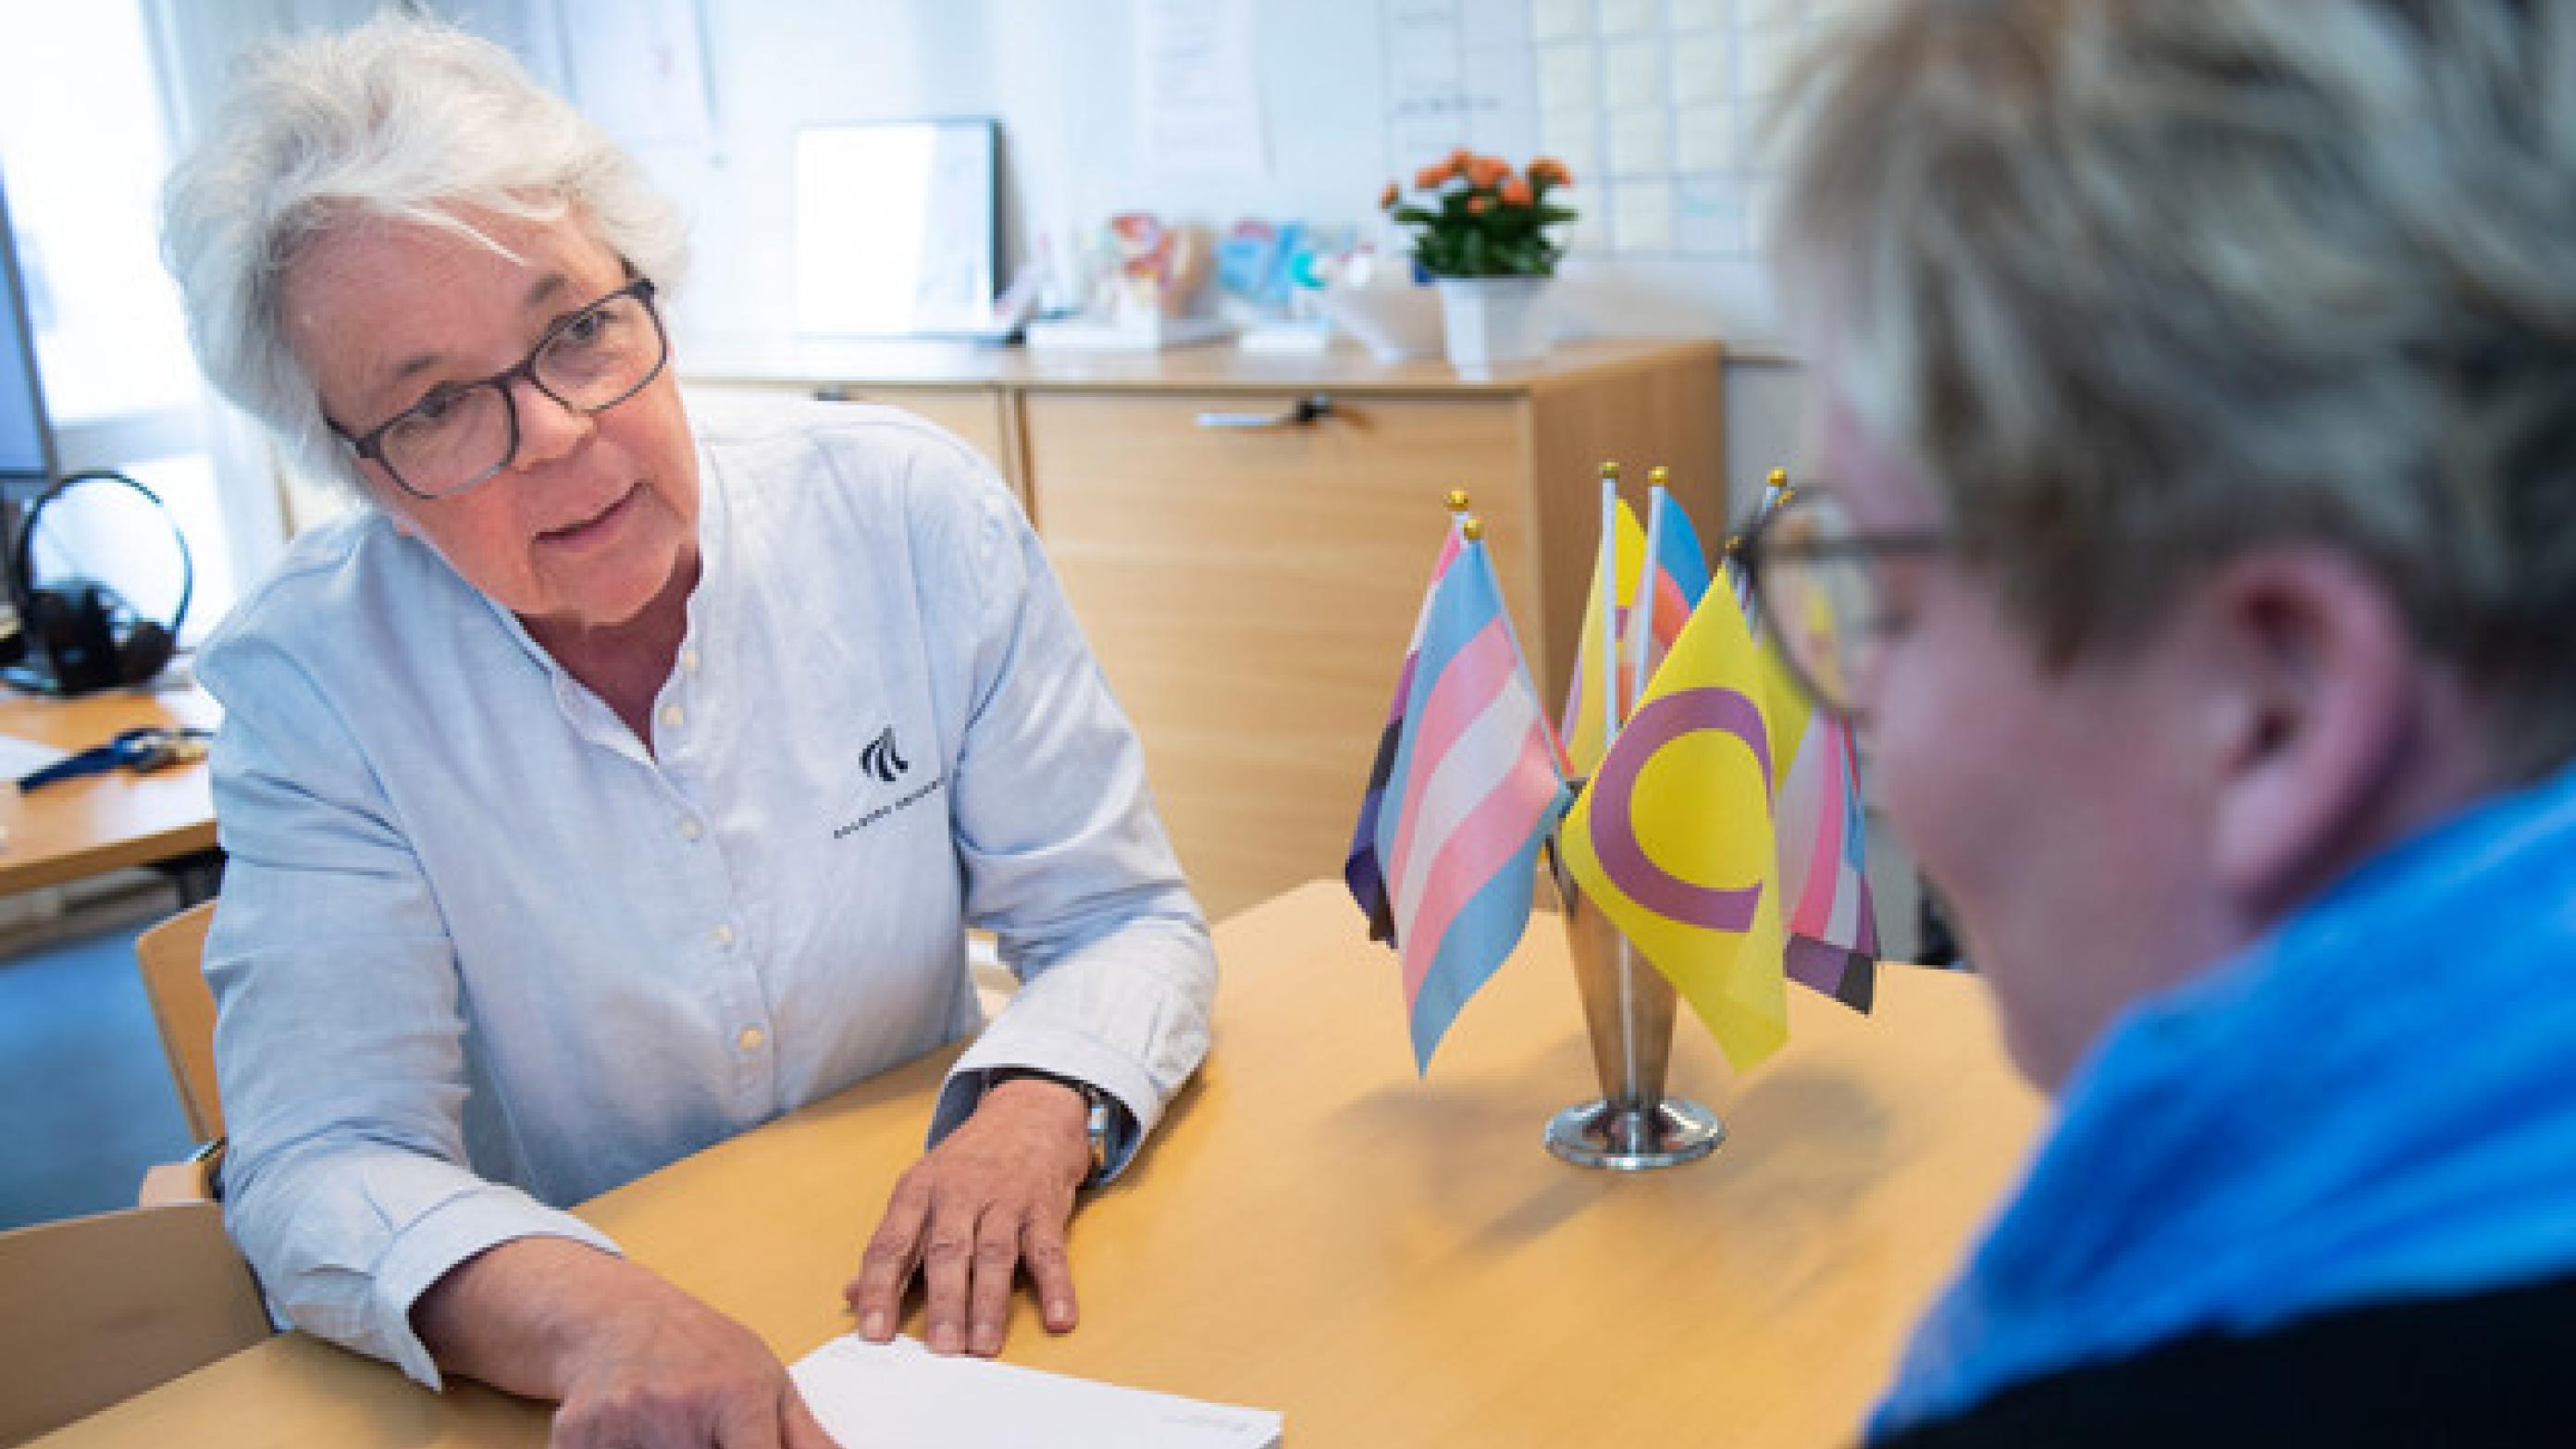 Dwell Identificere Allerede Patienterne strømmer til nye centre for kønsidentitet | Ugeskriftet.dk